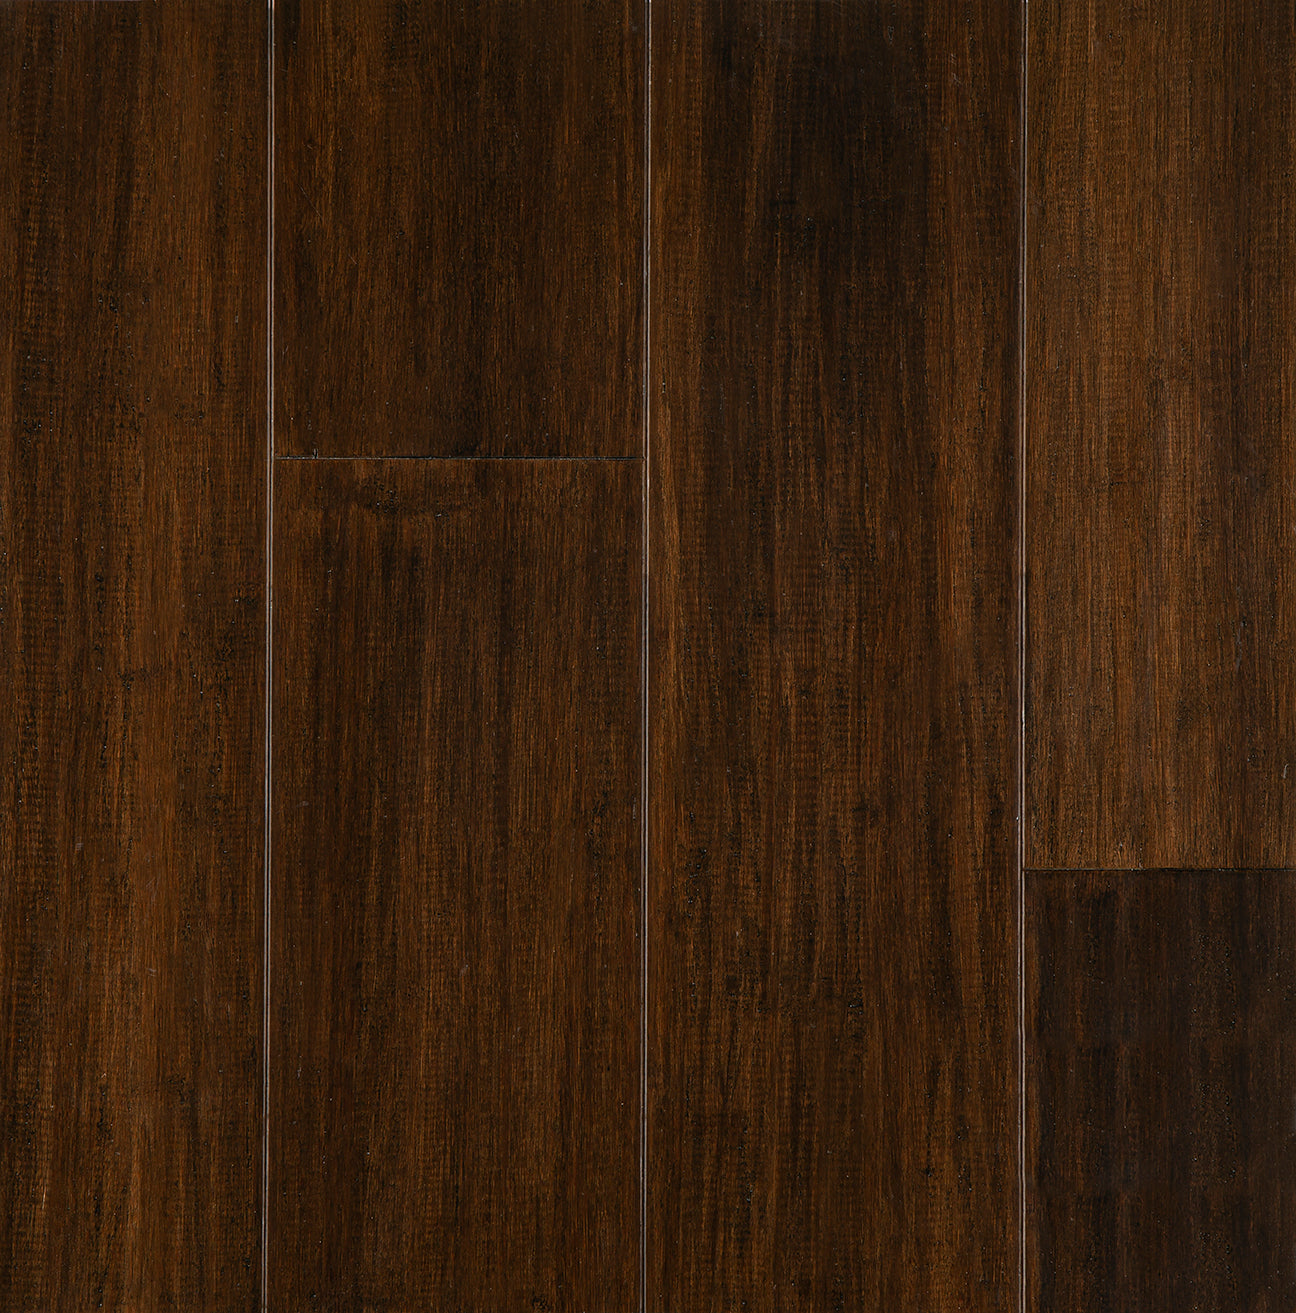 7mm Cognac Waterproof Engineered Strand Bamboo Flooring 5.12 in. Wide x 36.22 in. Long - Sample